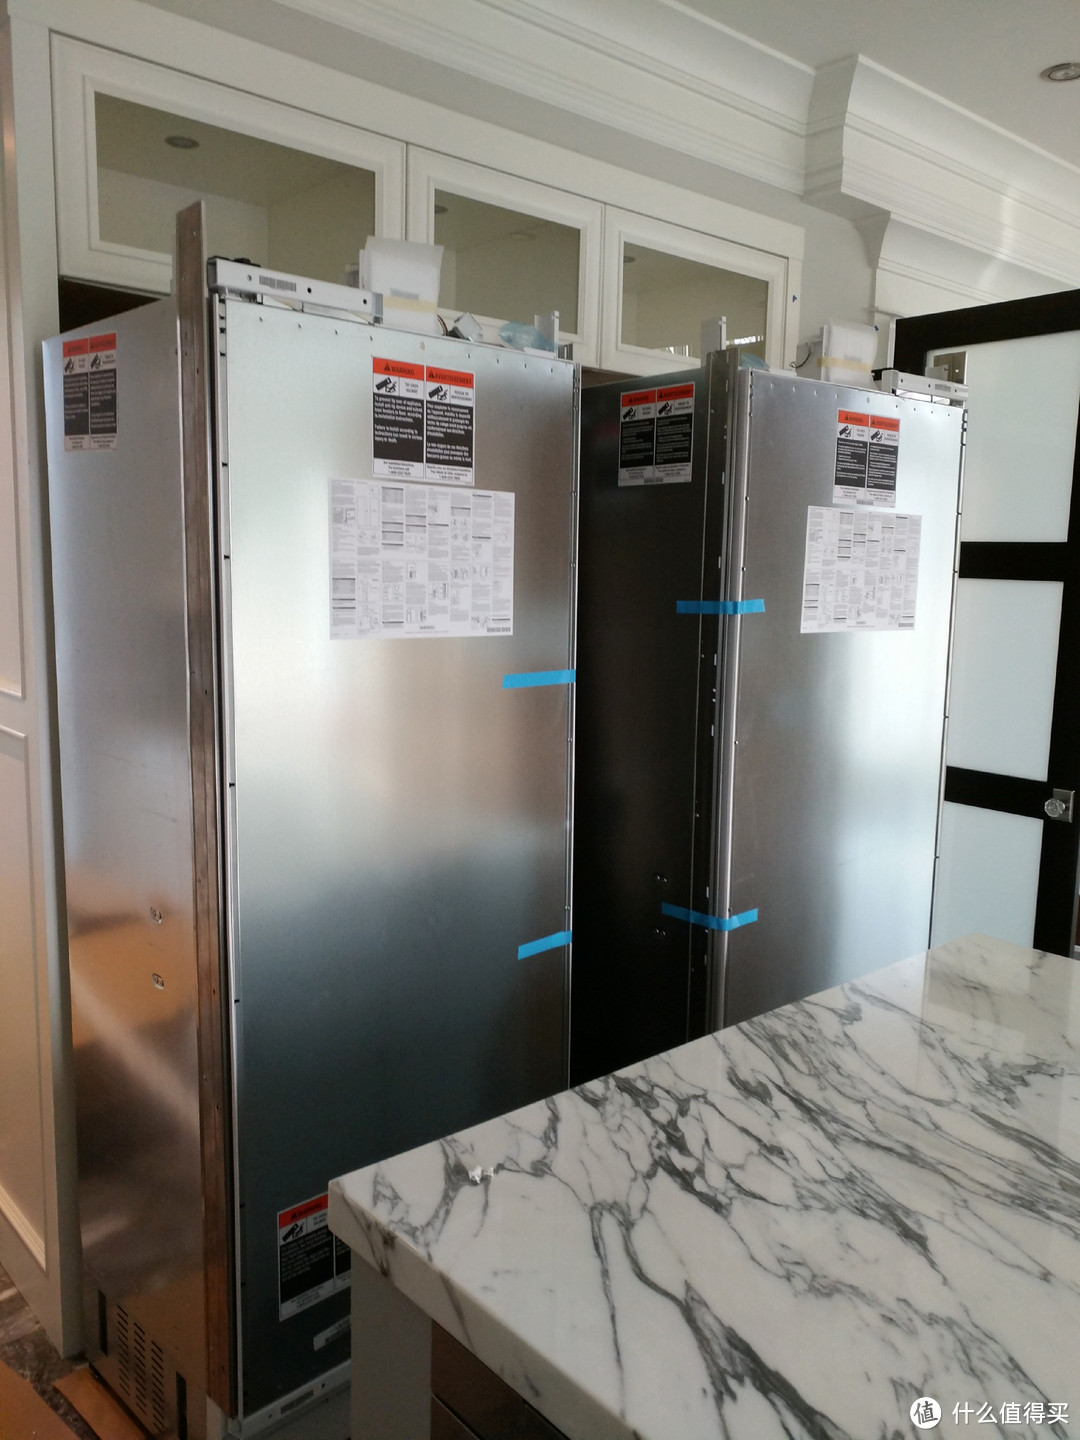 #翻个冰箱#安迪的厨房花了20万？東哥带您翻个20万的Sub-Zero冰箱